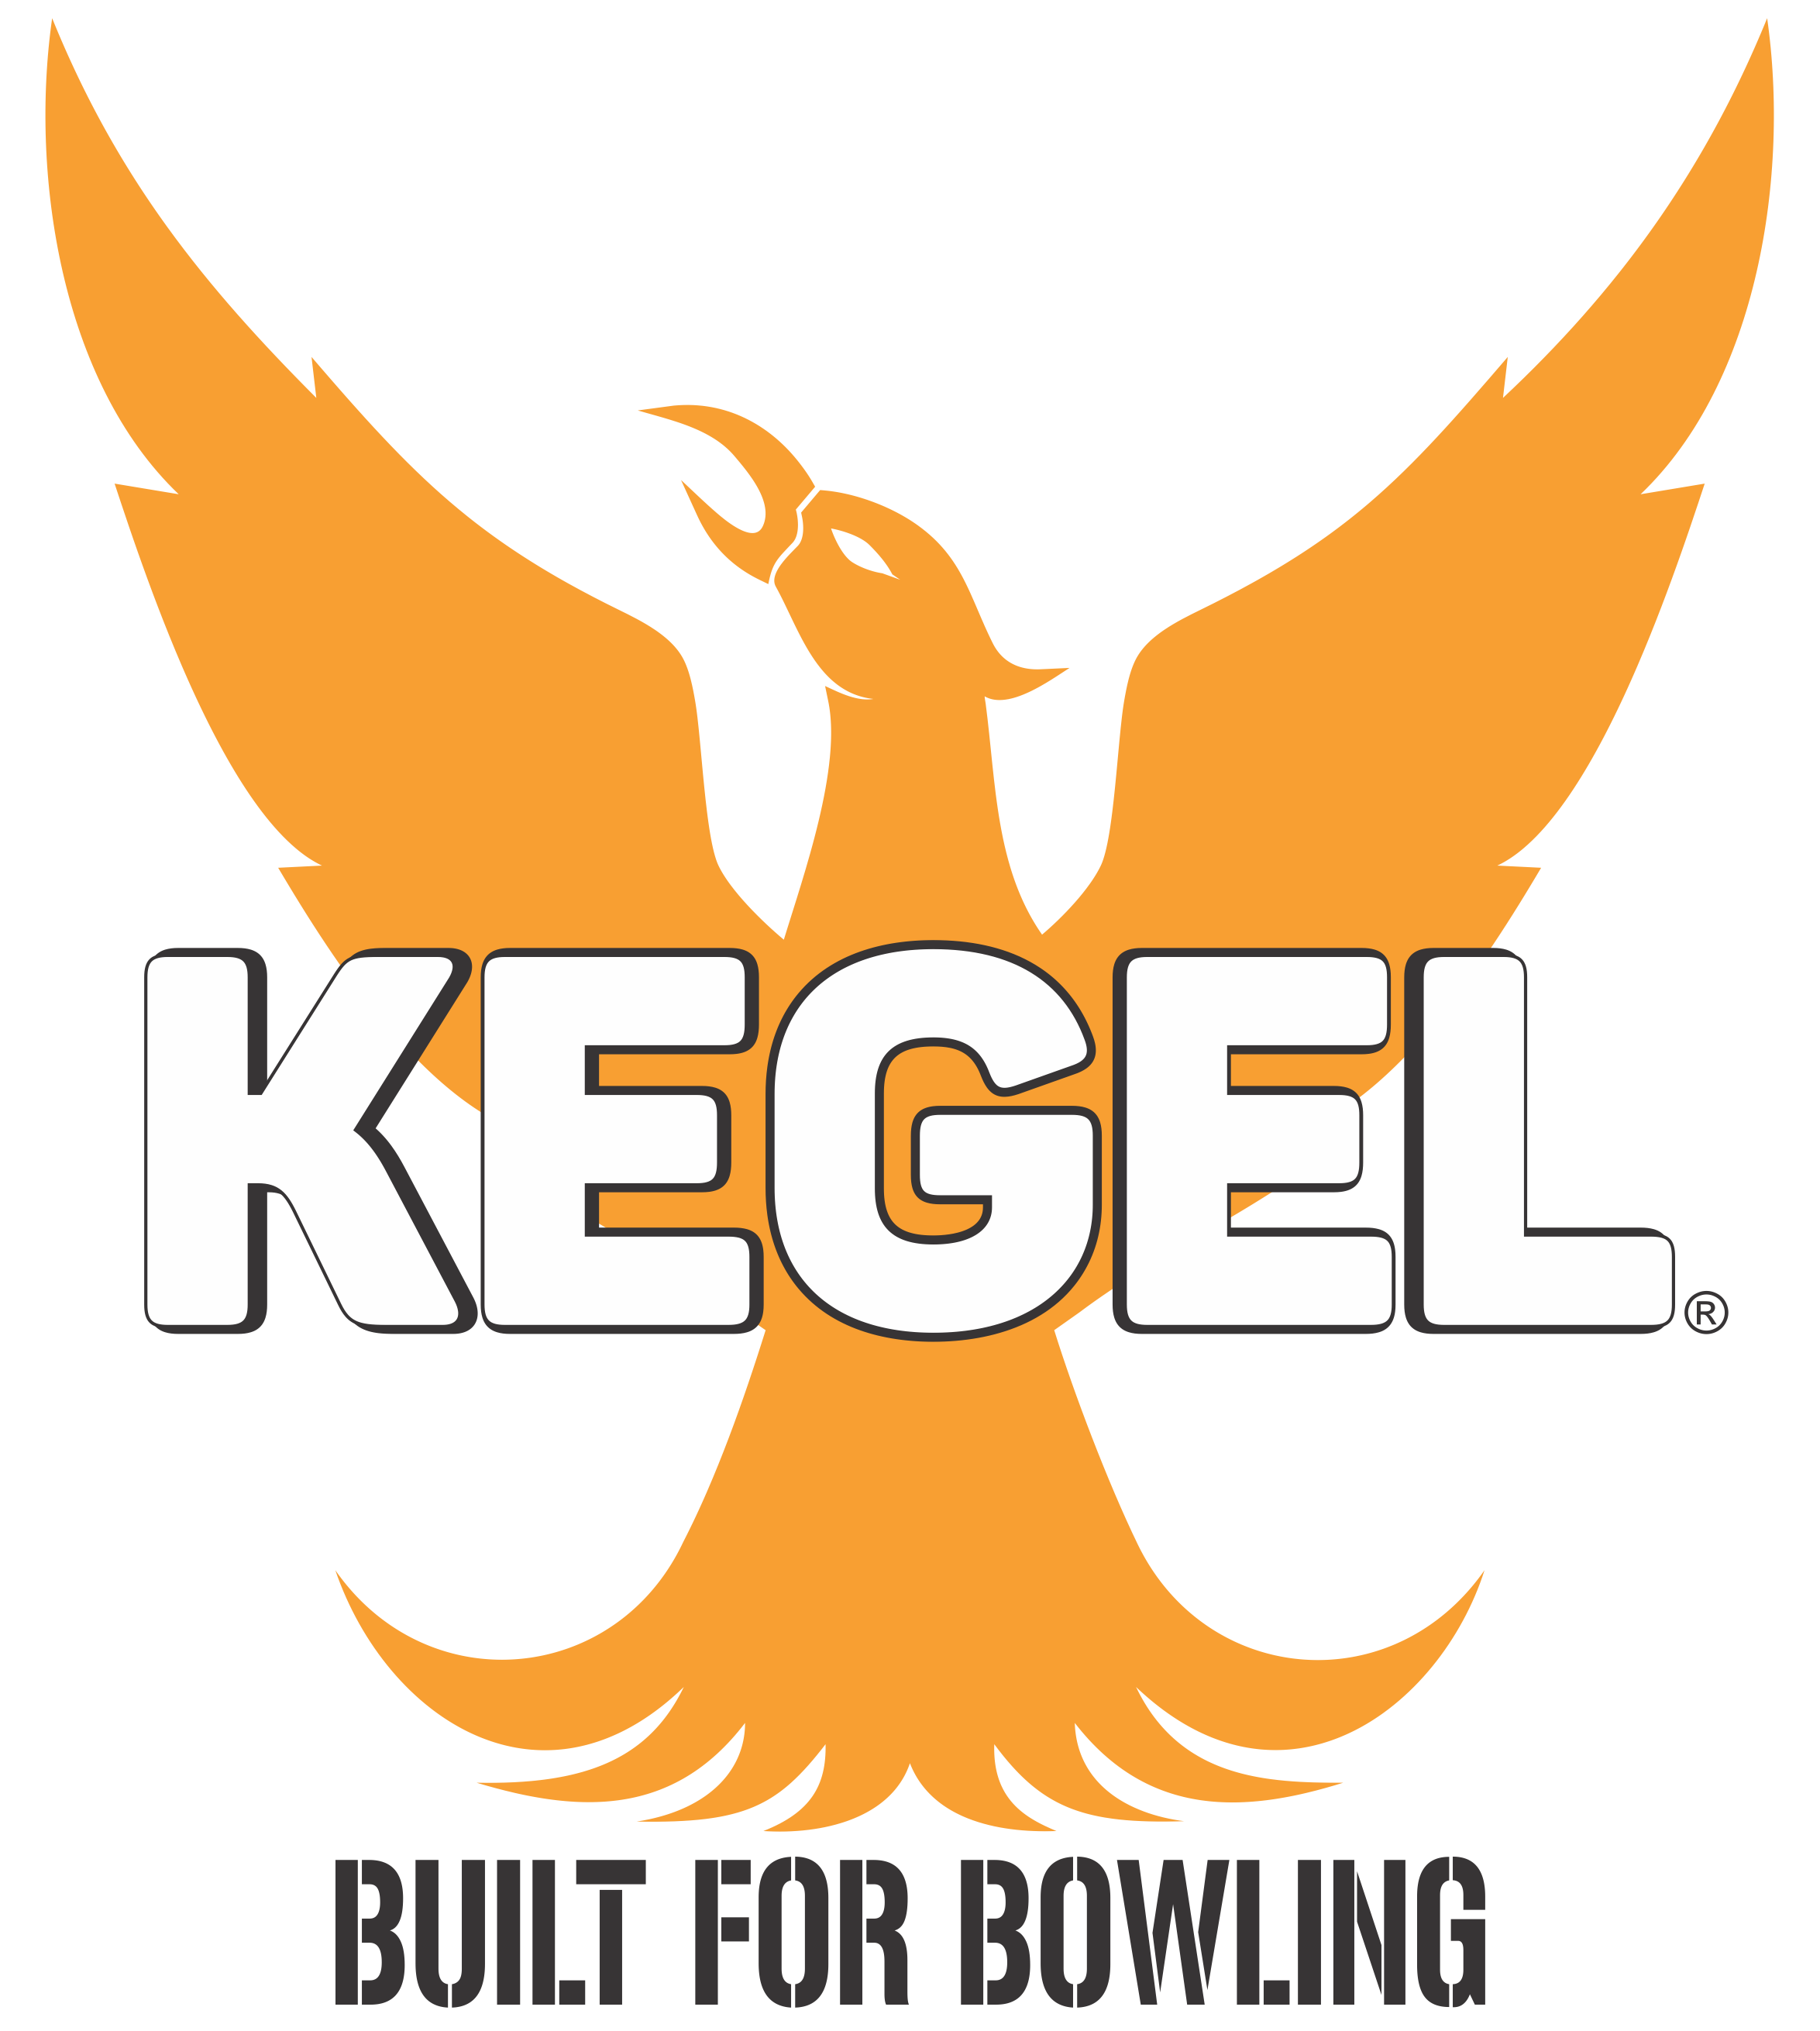 Kegel logo